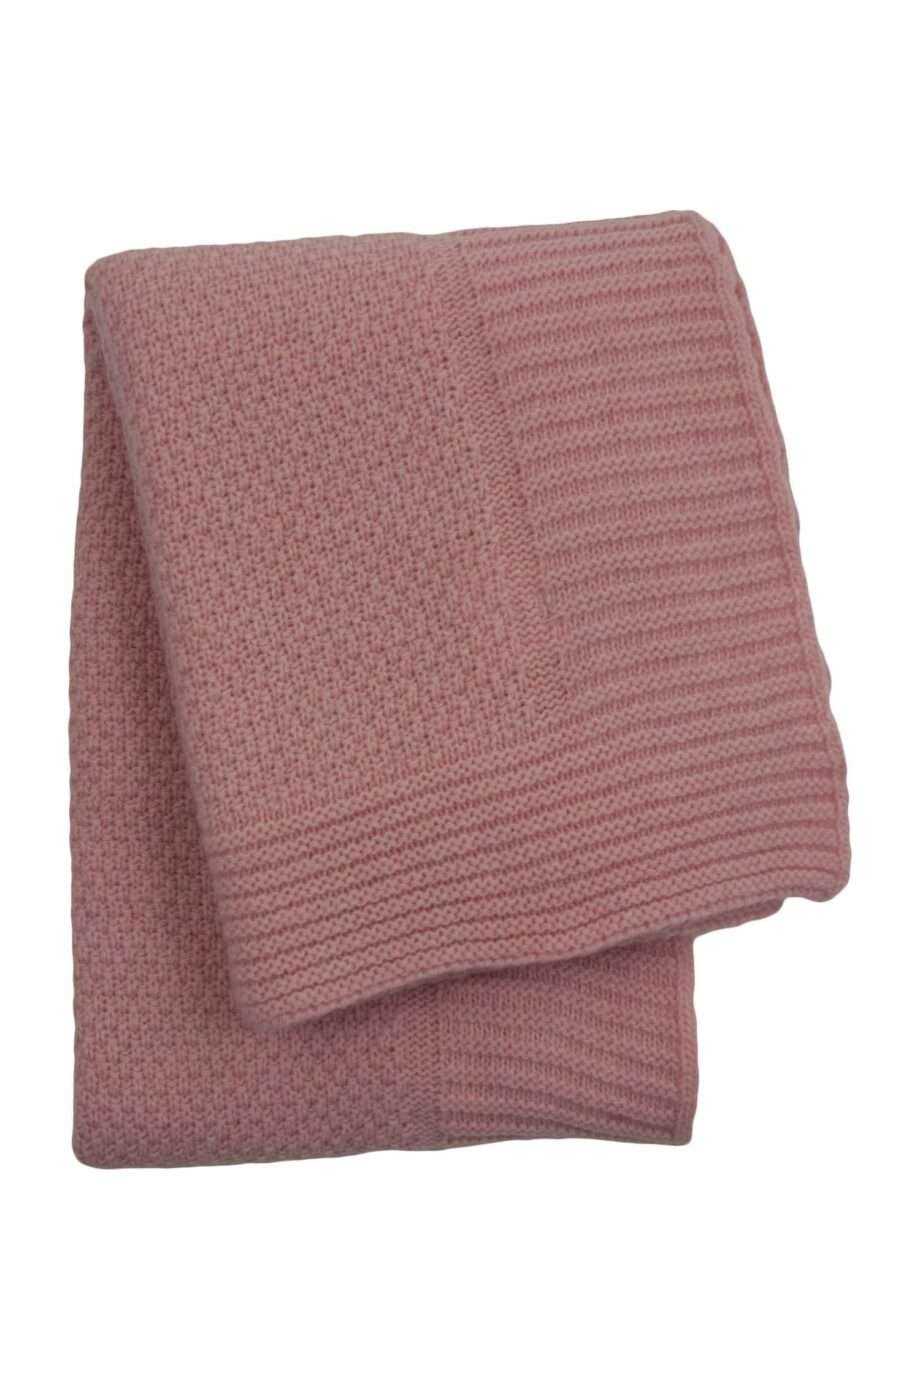 rice baby pink knitted woolen little blanket medium